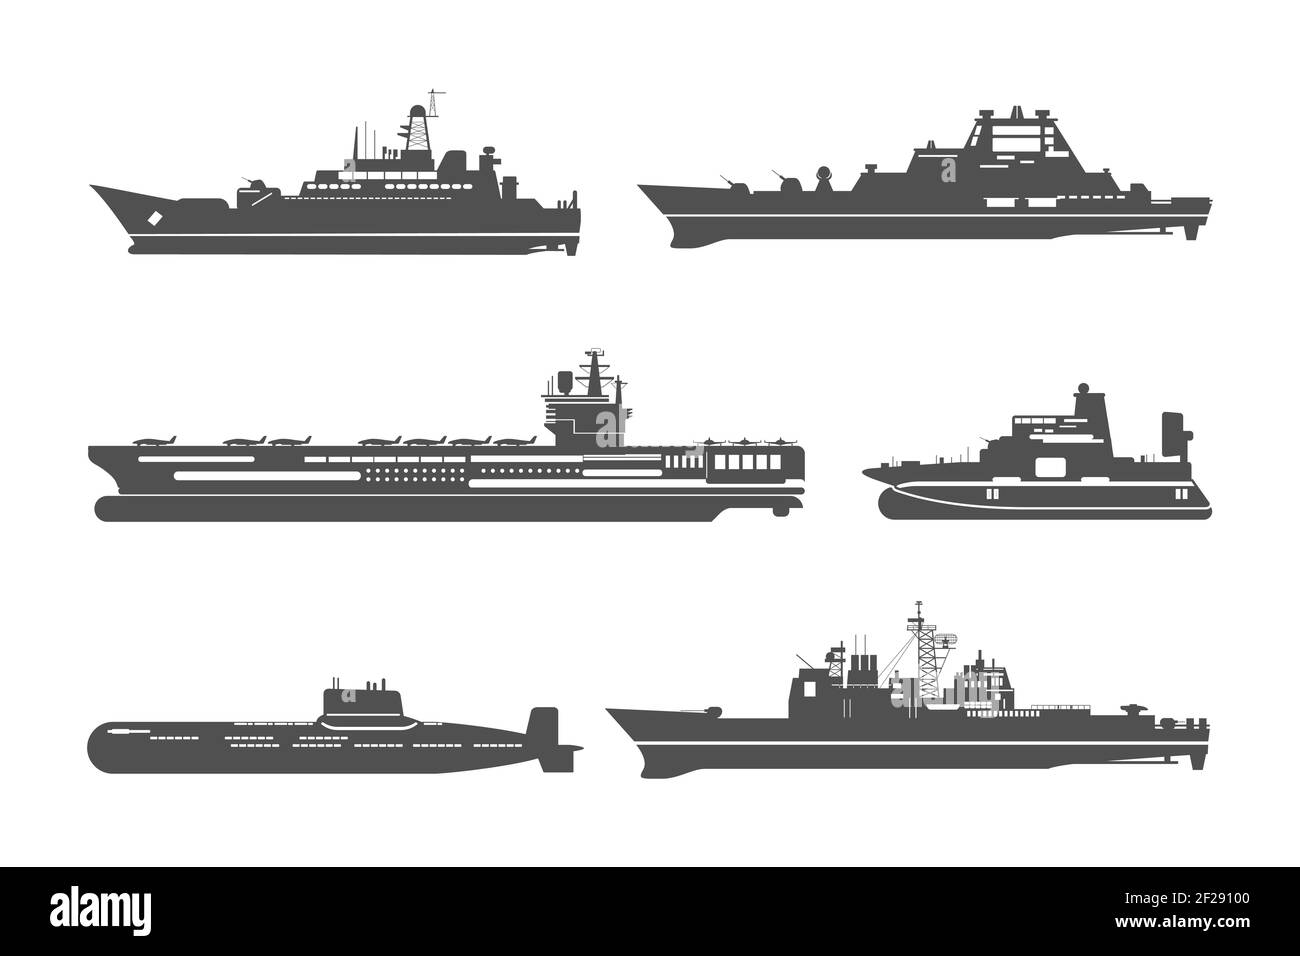 Silhouetten von Marineschiffen. Marine Transport, Transport und militärische Schifffahrt. Vektorgrafik Stock Vektor